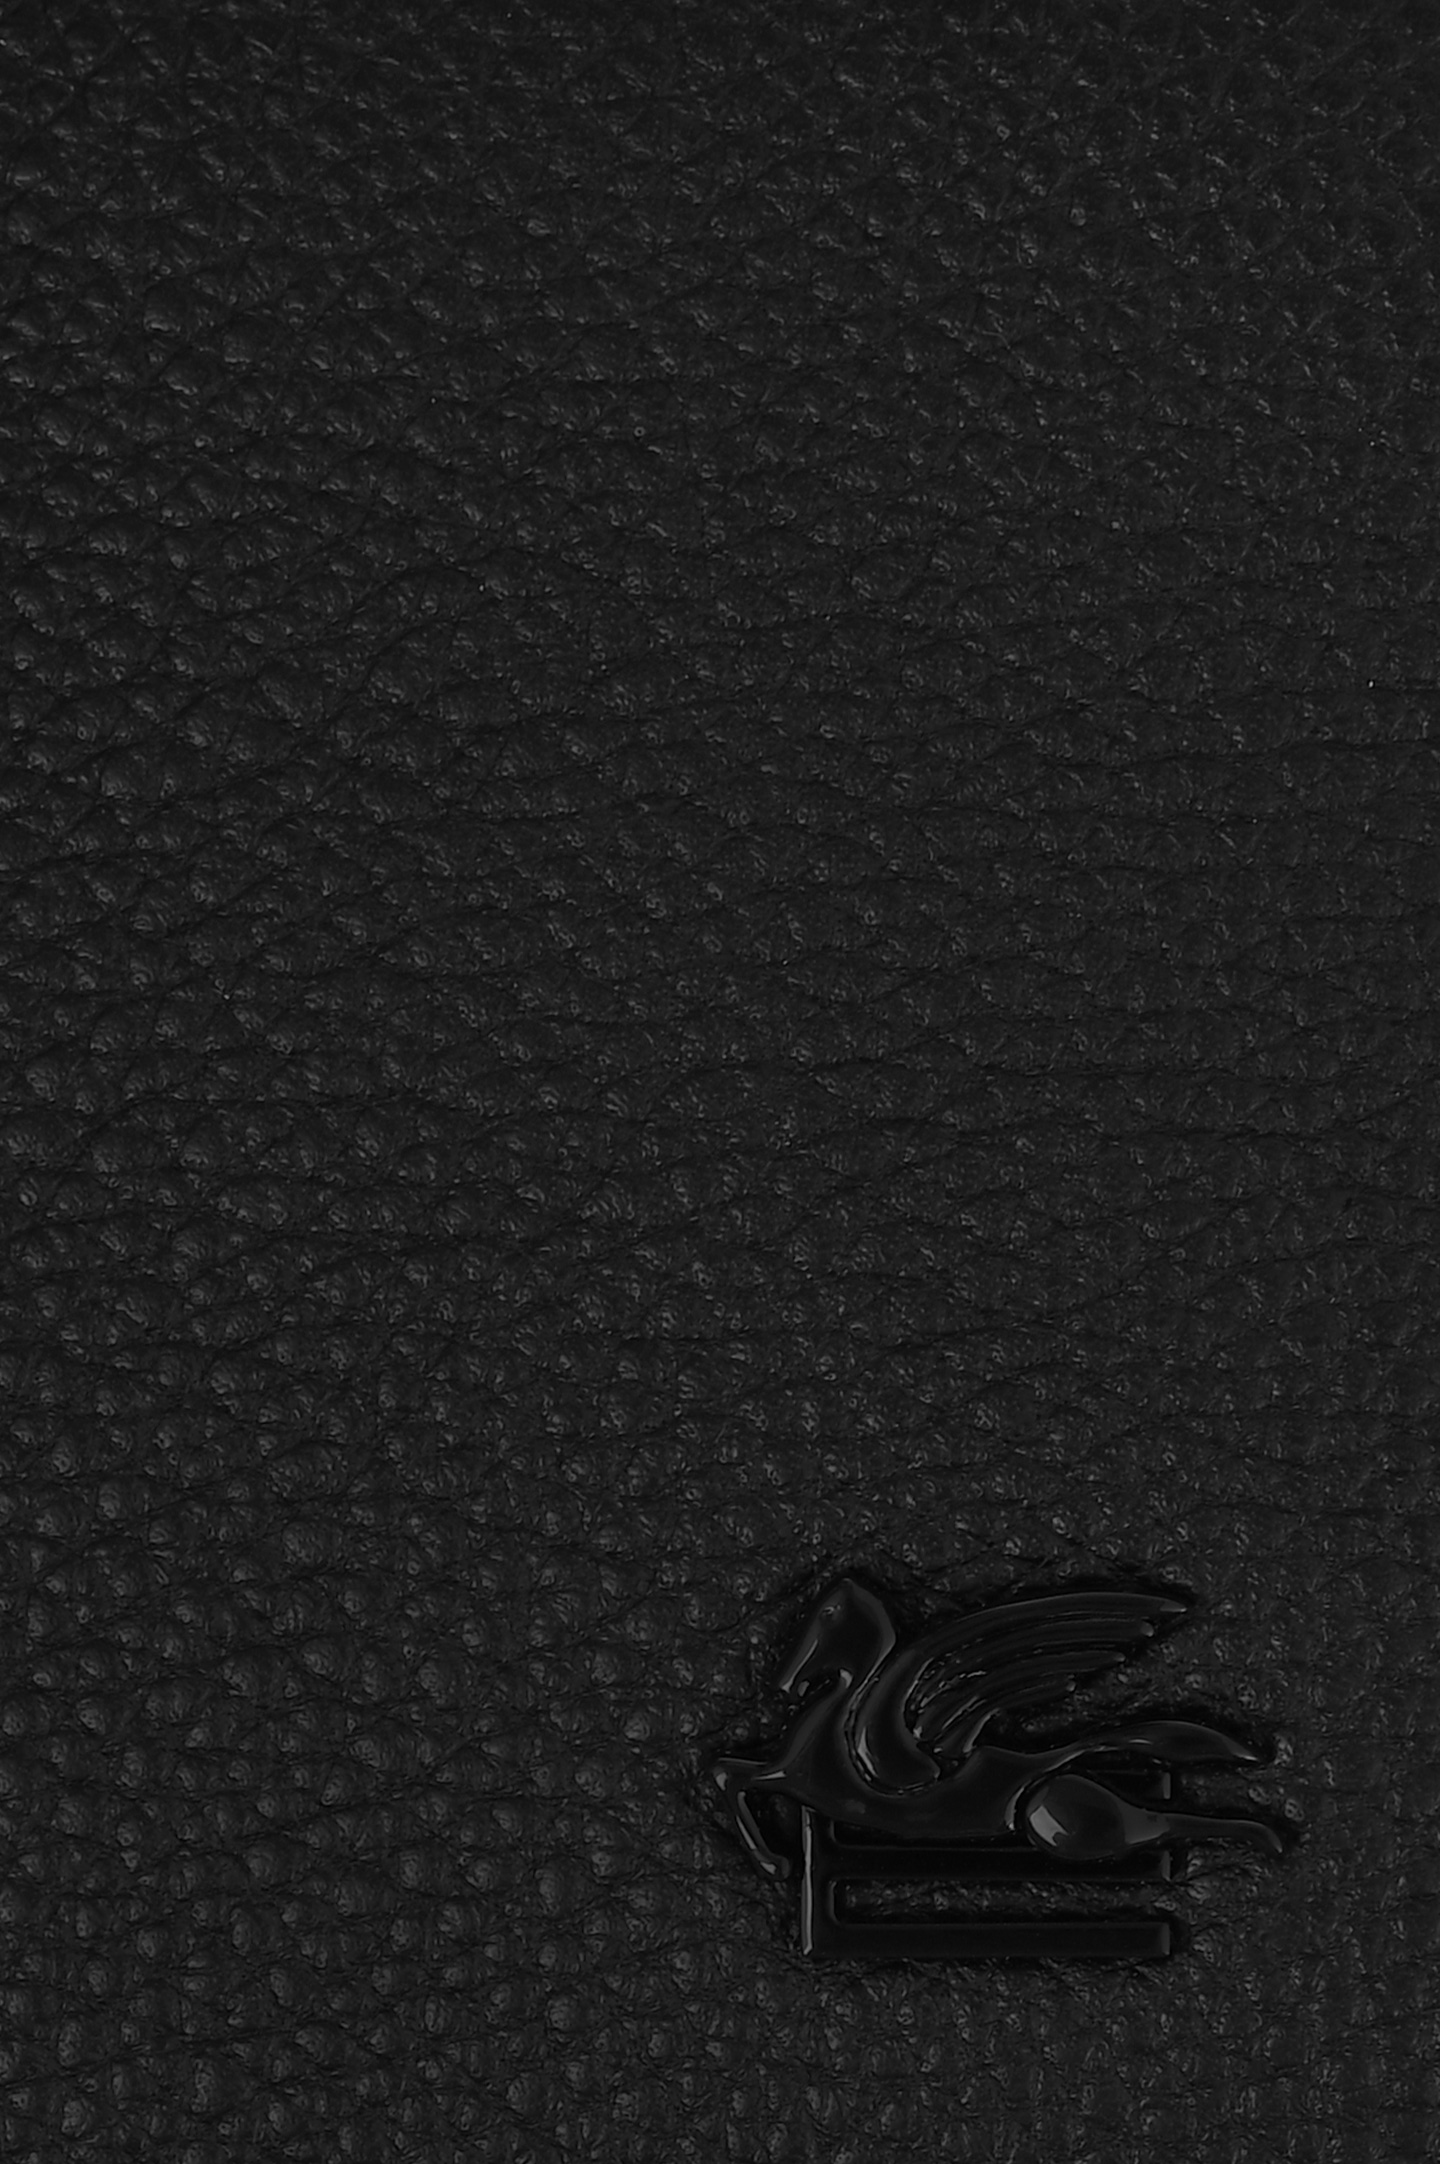 Кожаное портмоне ETRO MP2D0004 AU015, цвет: Черный, Мужской